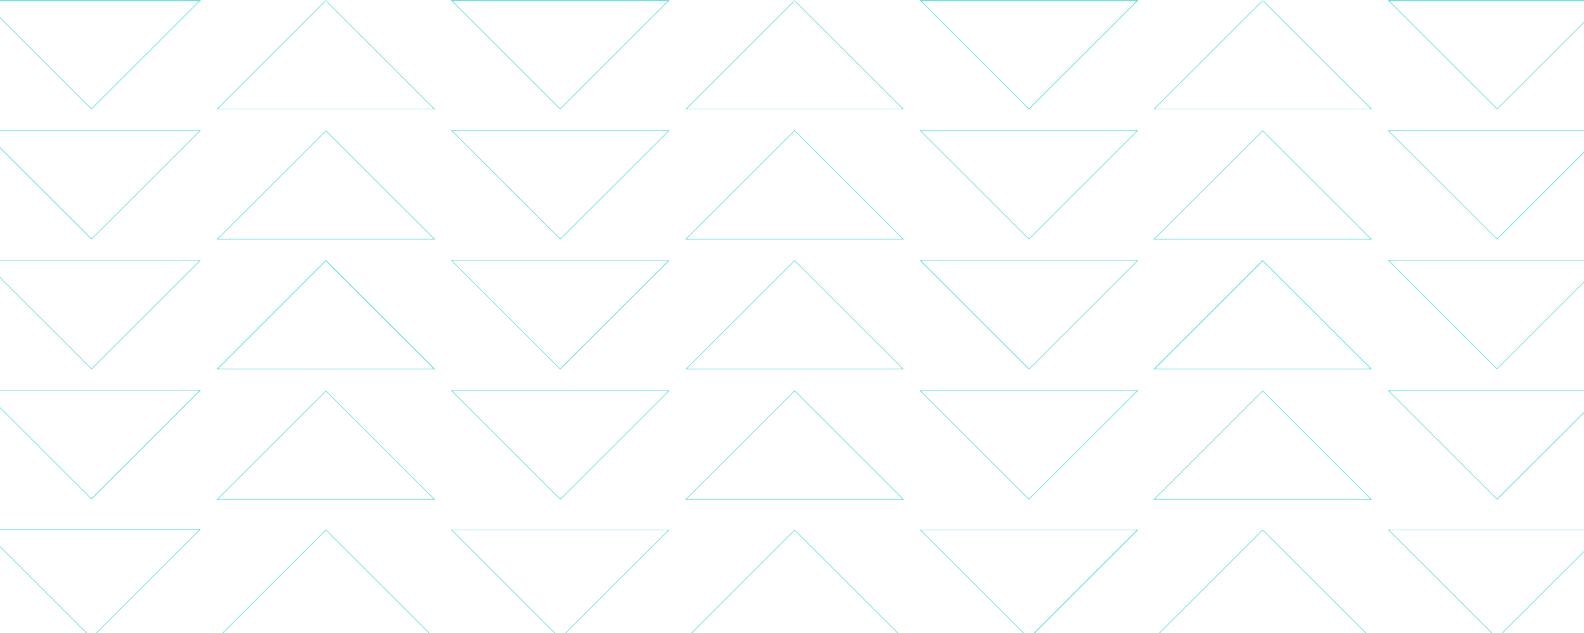 섬세한 삼각형 패턴을 형성하는 얇은 파란색 선을 보여 주는 그림